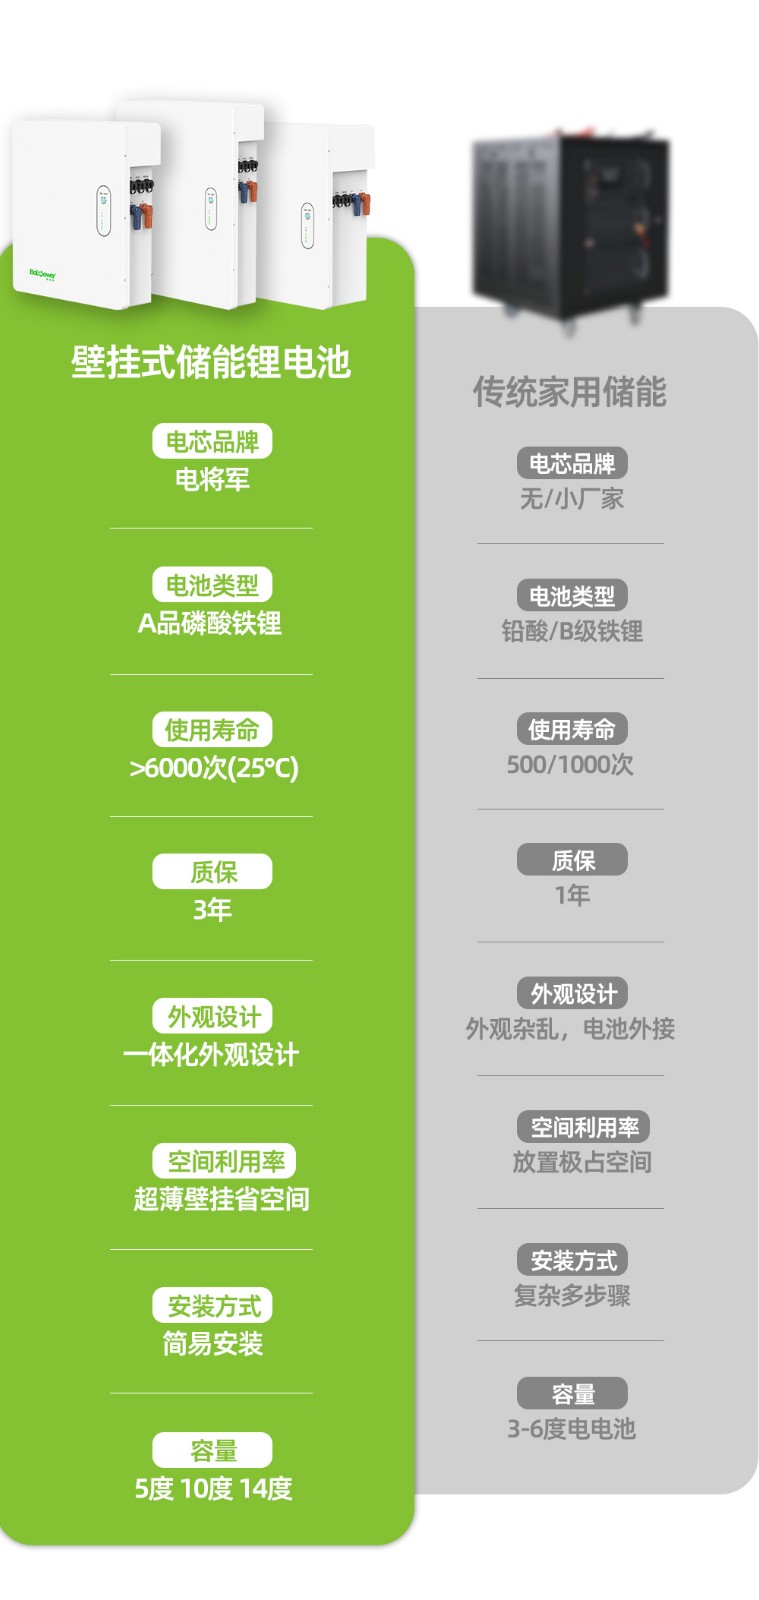 新葡萄新京B0500A 5000WH家庭储能电池包_11